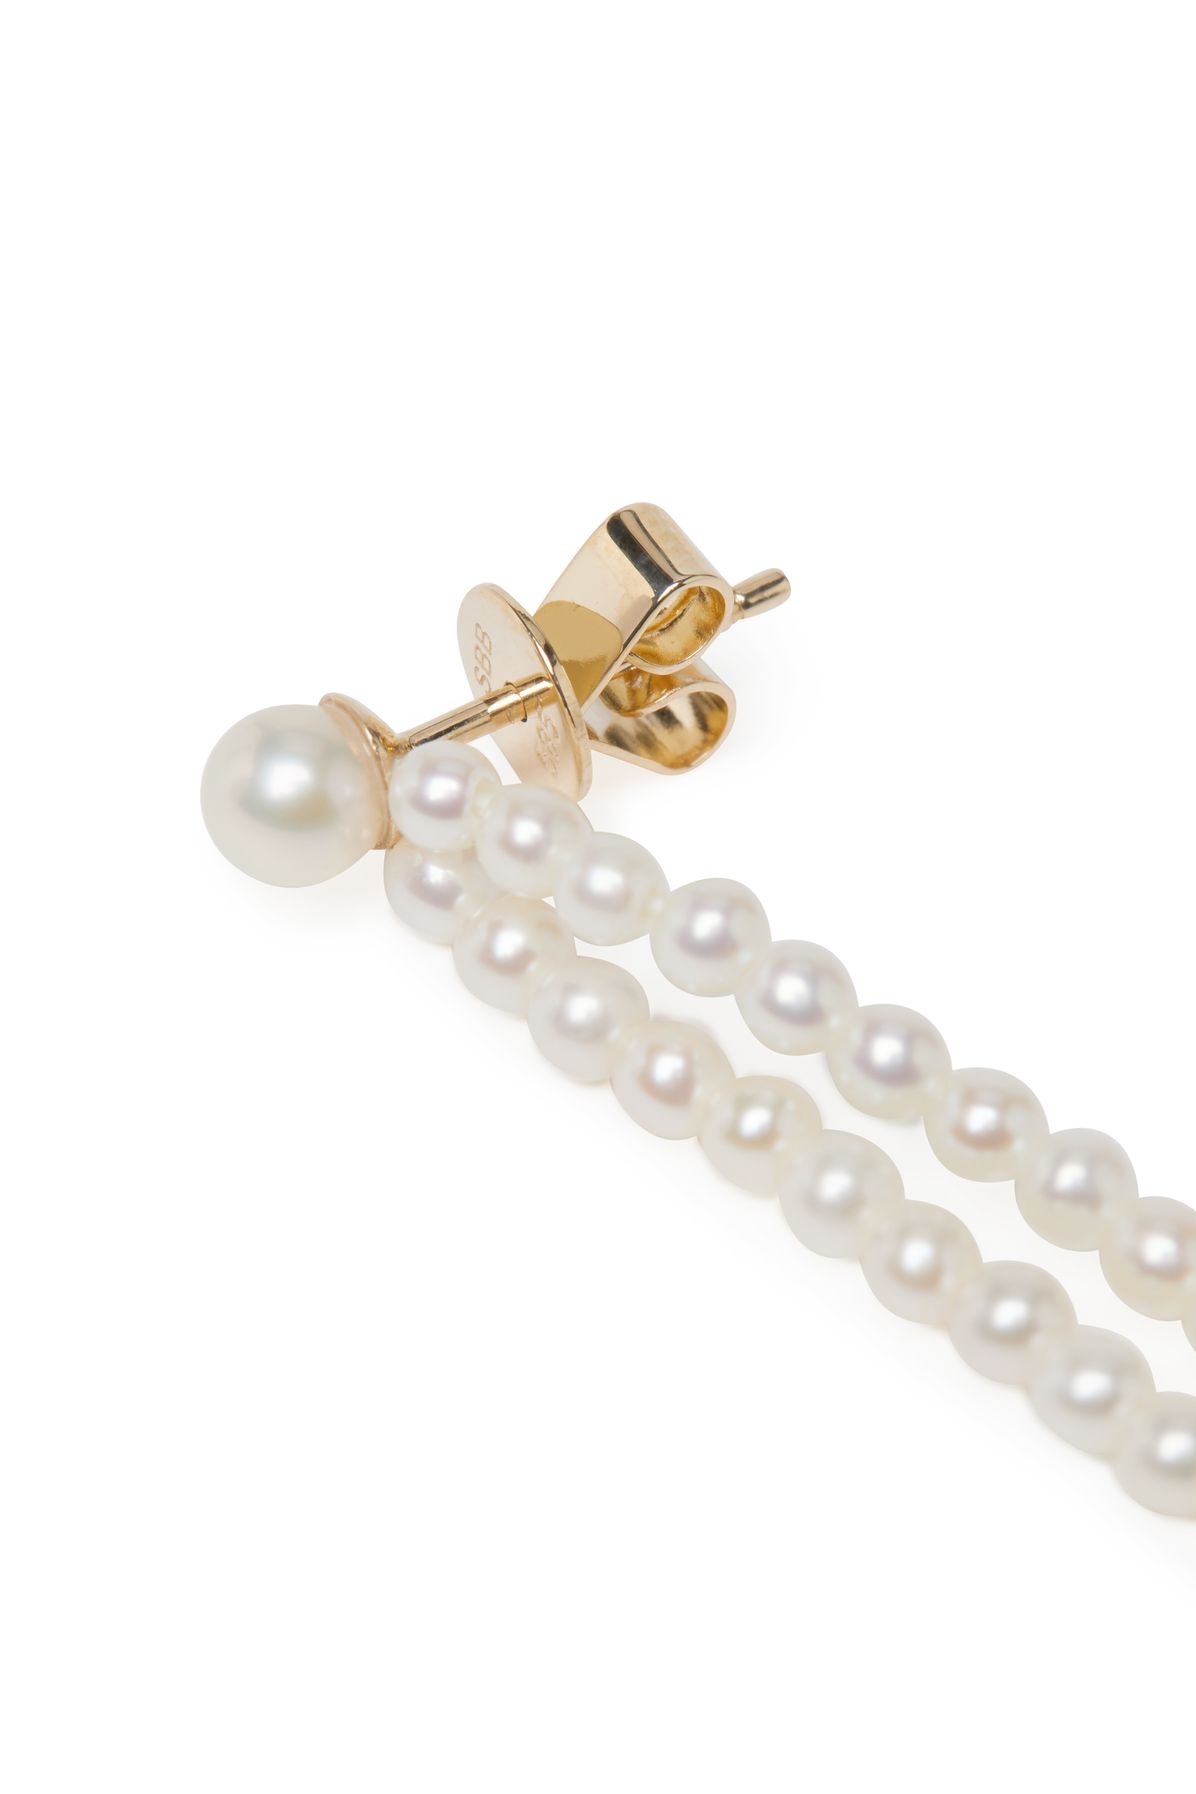 Sophie Bille Brahe Pearls earrings